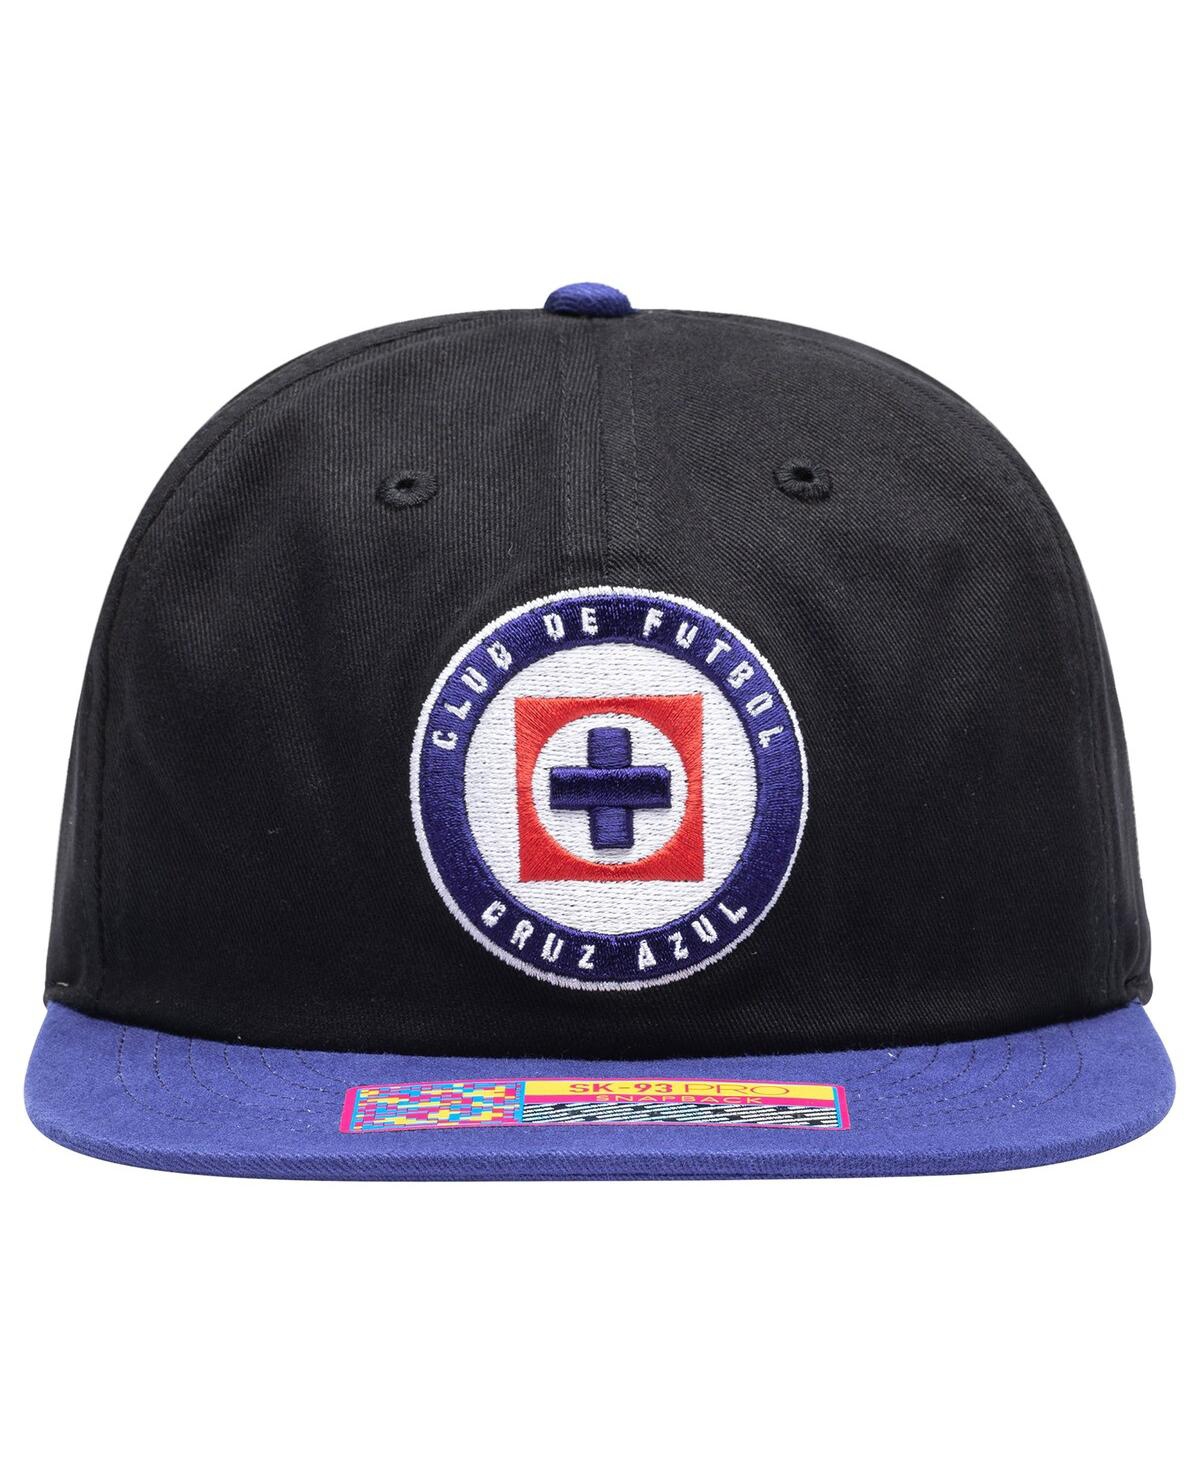 Shop Fan Ink Men's Black Cruz Azul Swingman Snapback Hat